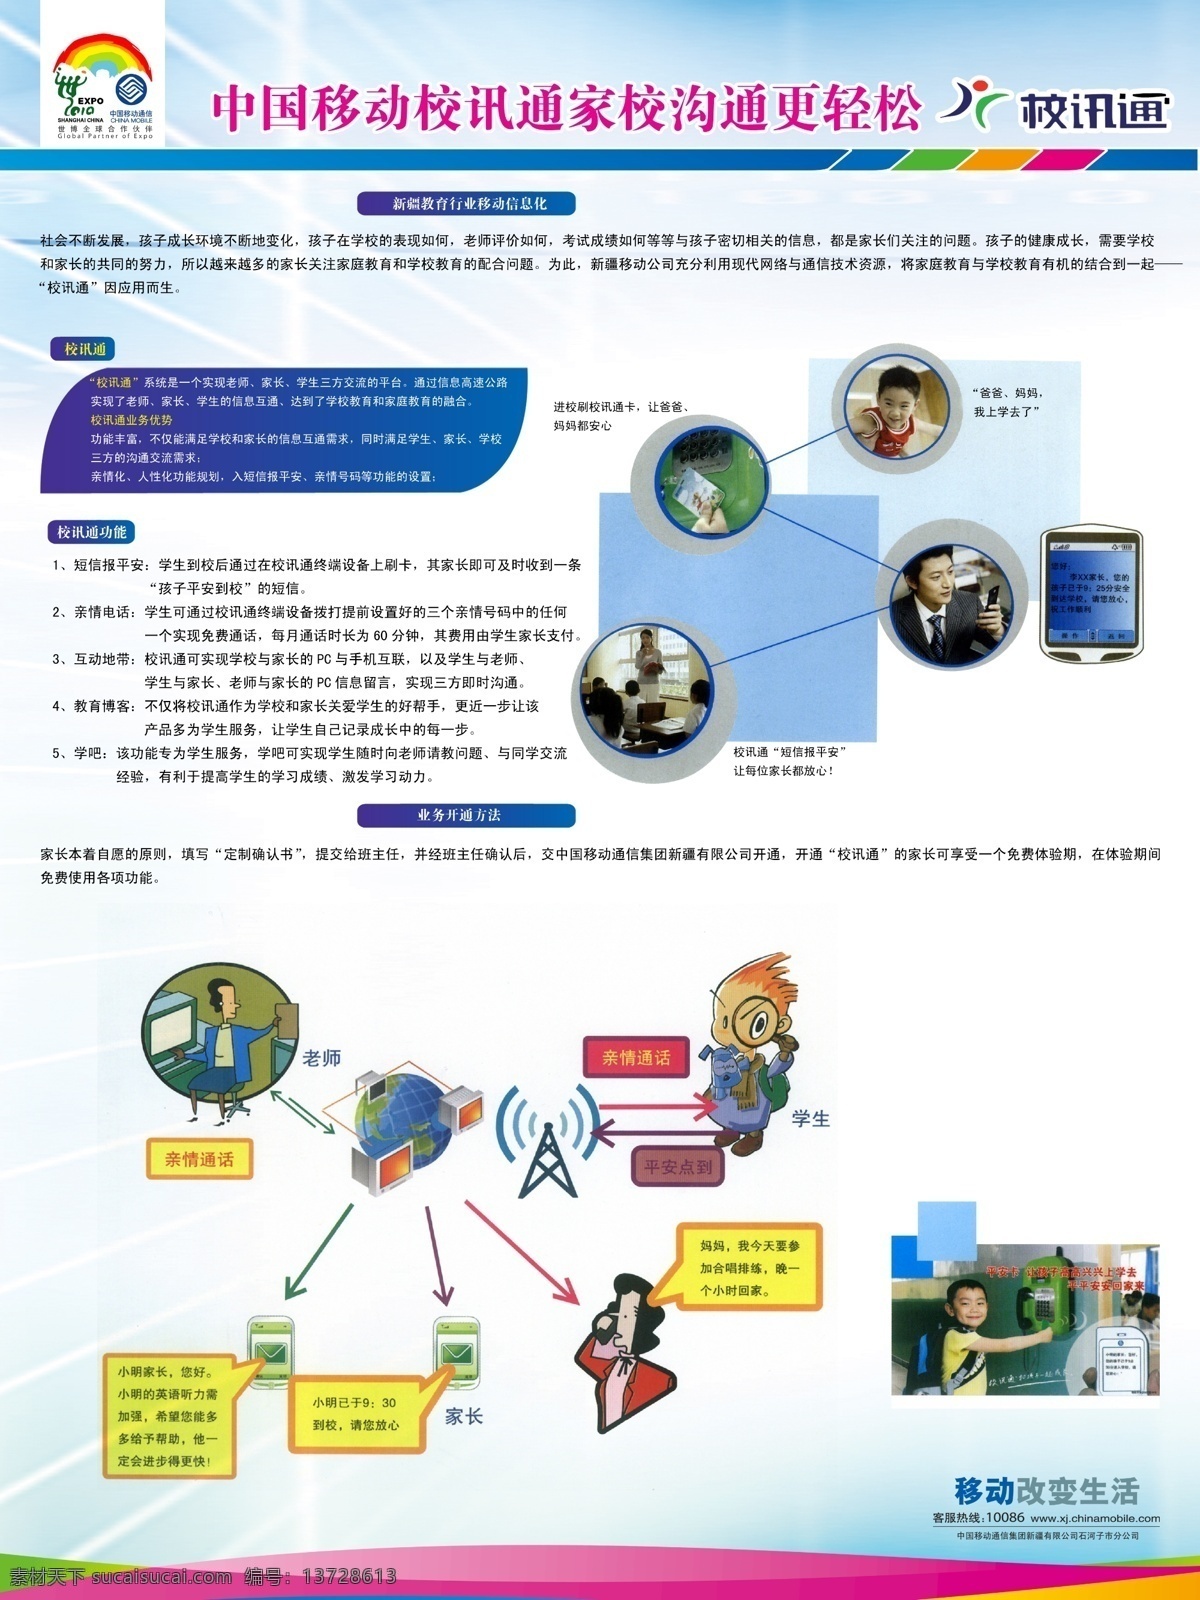 中国移动 校 讯通 家 沟通 更 轻松 移动 校讯通 展板 模板 展板模板 广告设计模板 源文件